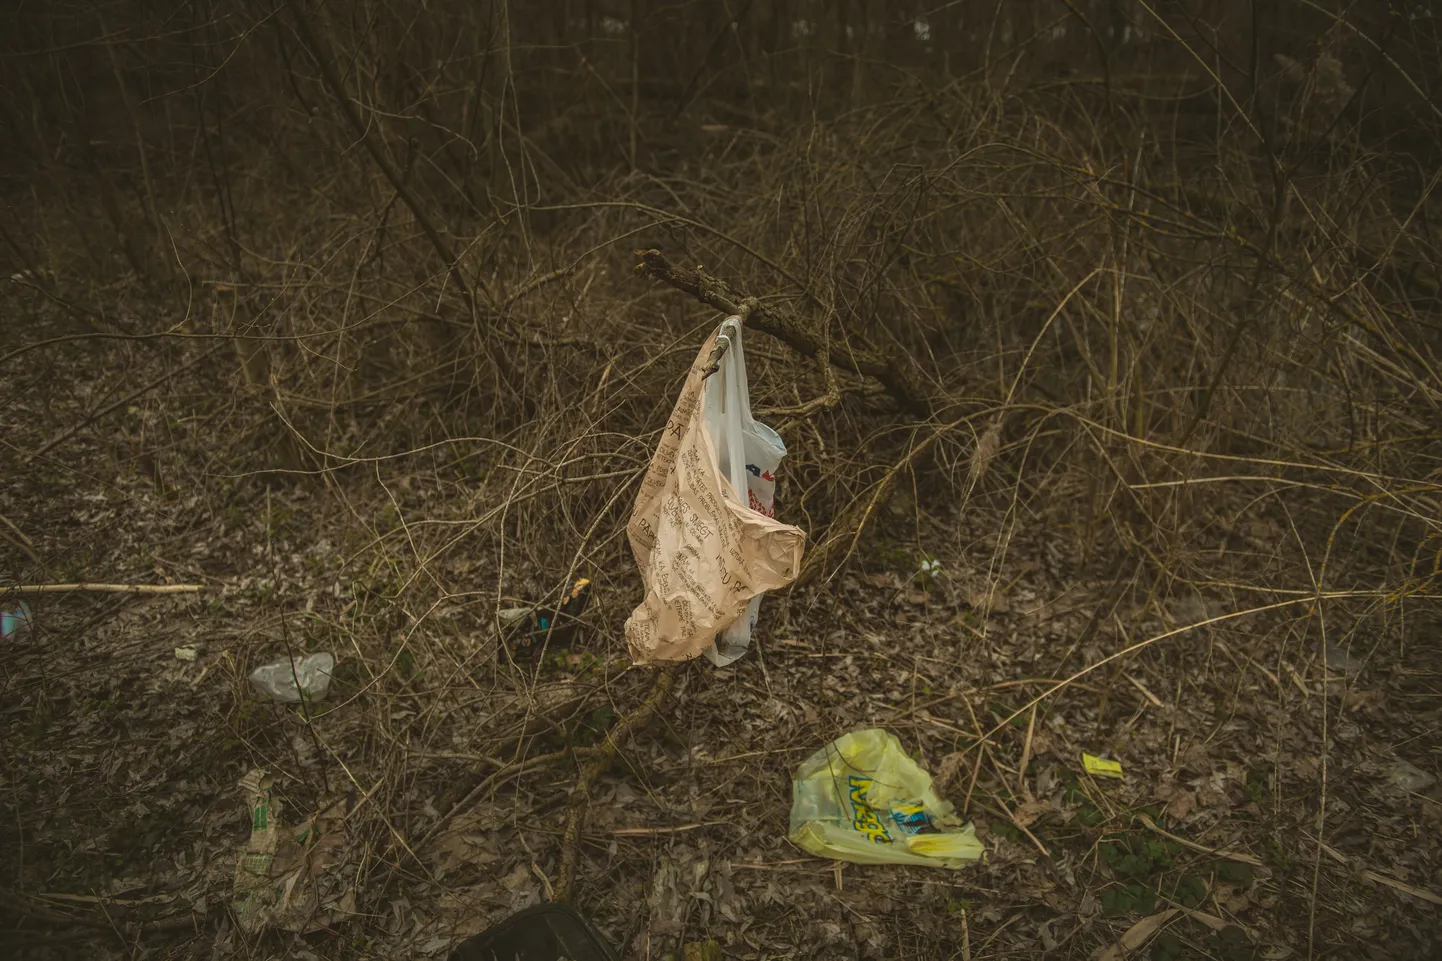 Foto: Pumpuri, atkritumi un kautrīgs bezpajumtnieks Zaķusalā